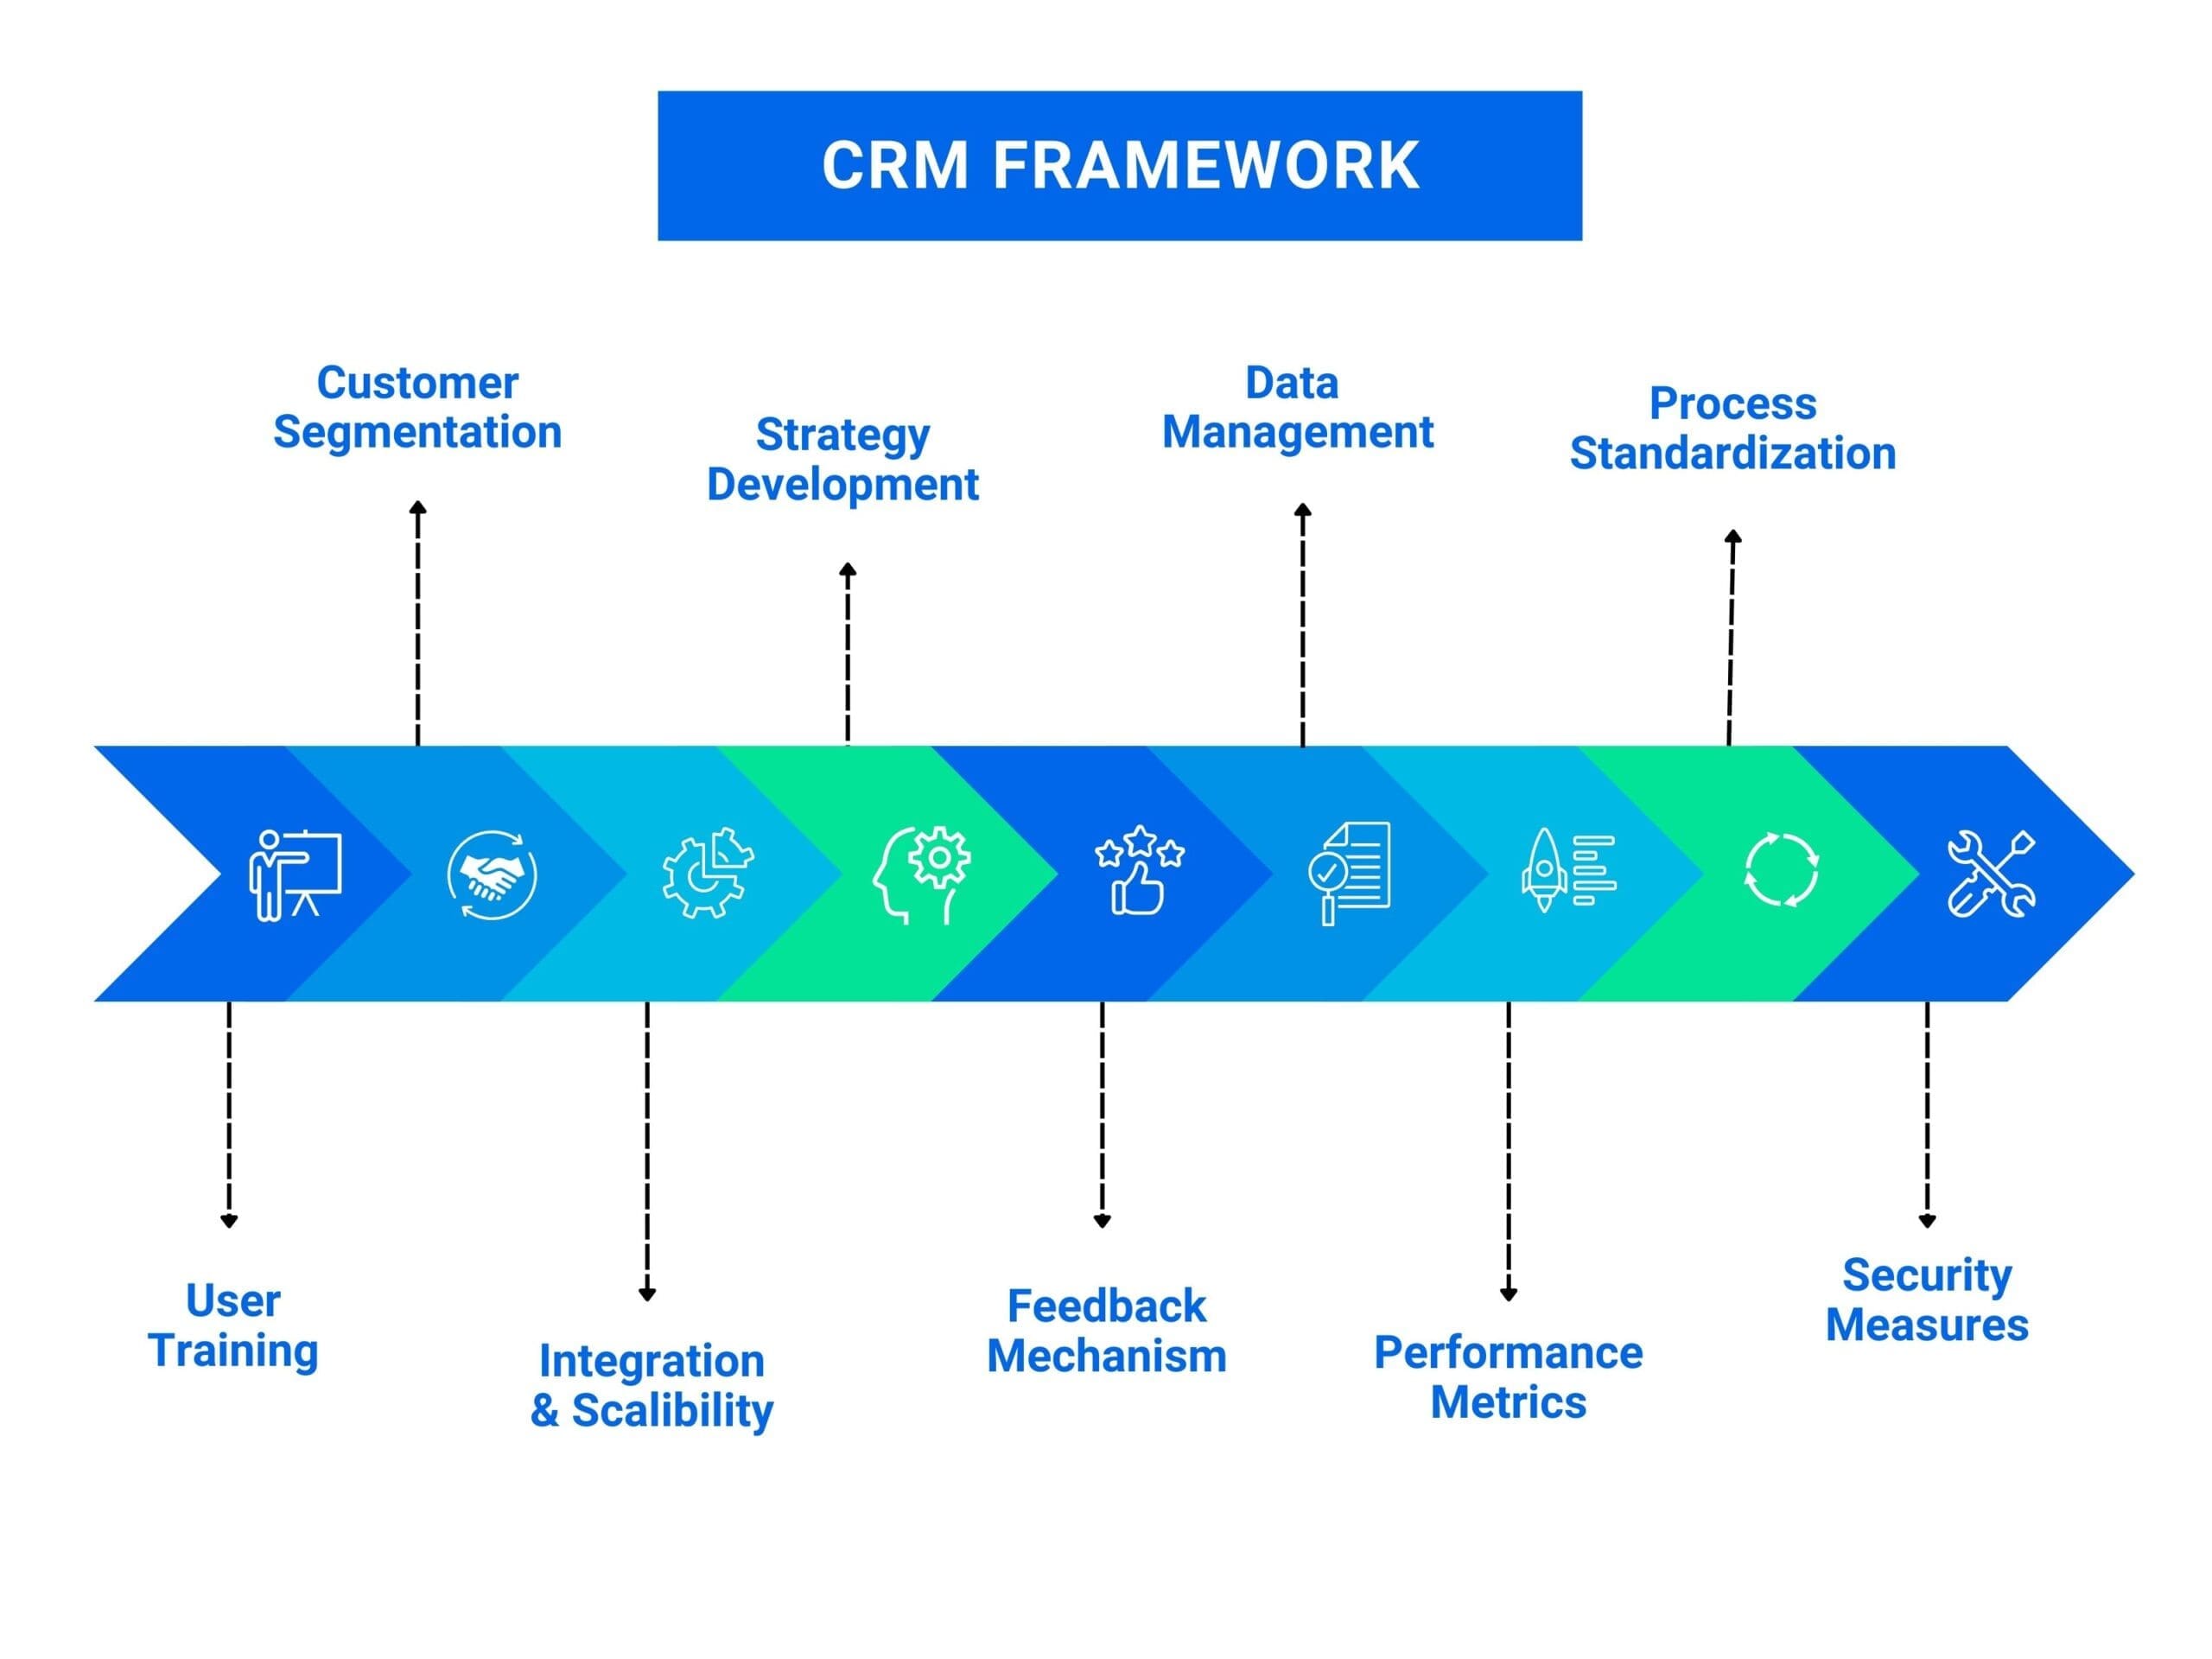 Customer relationship management (CRM) Framework